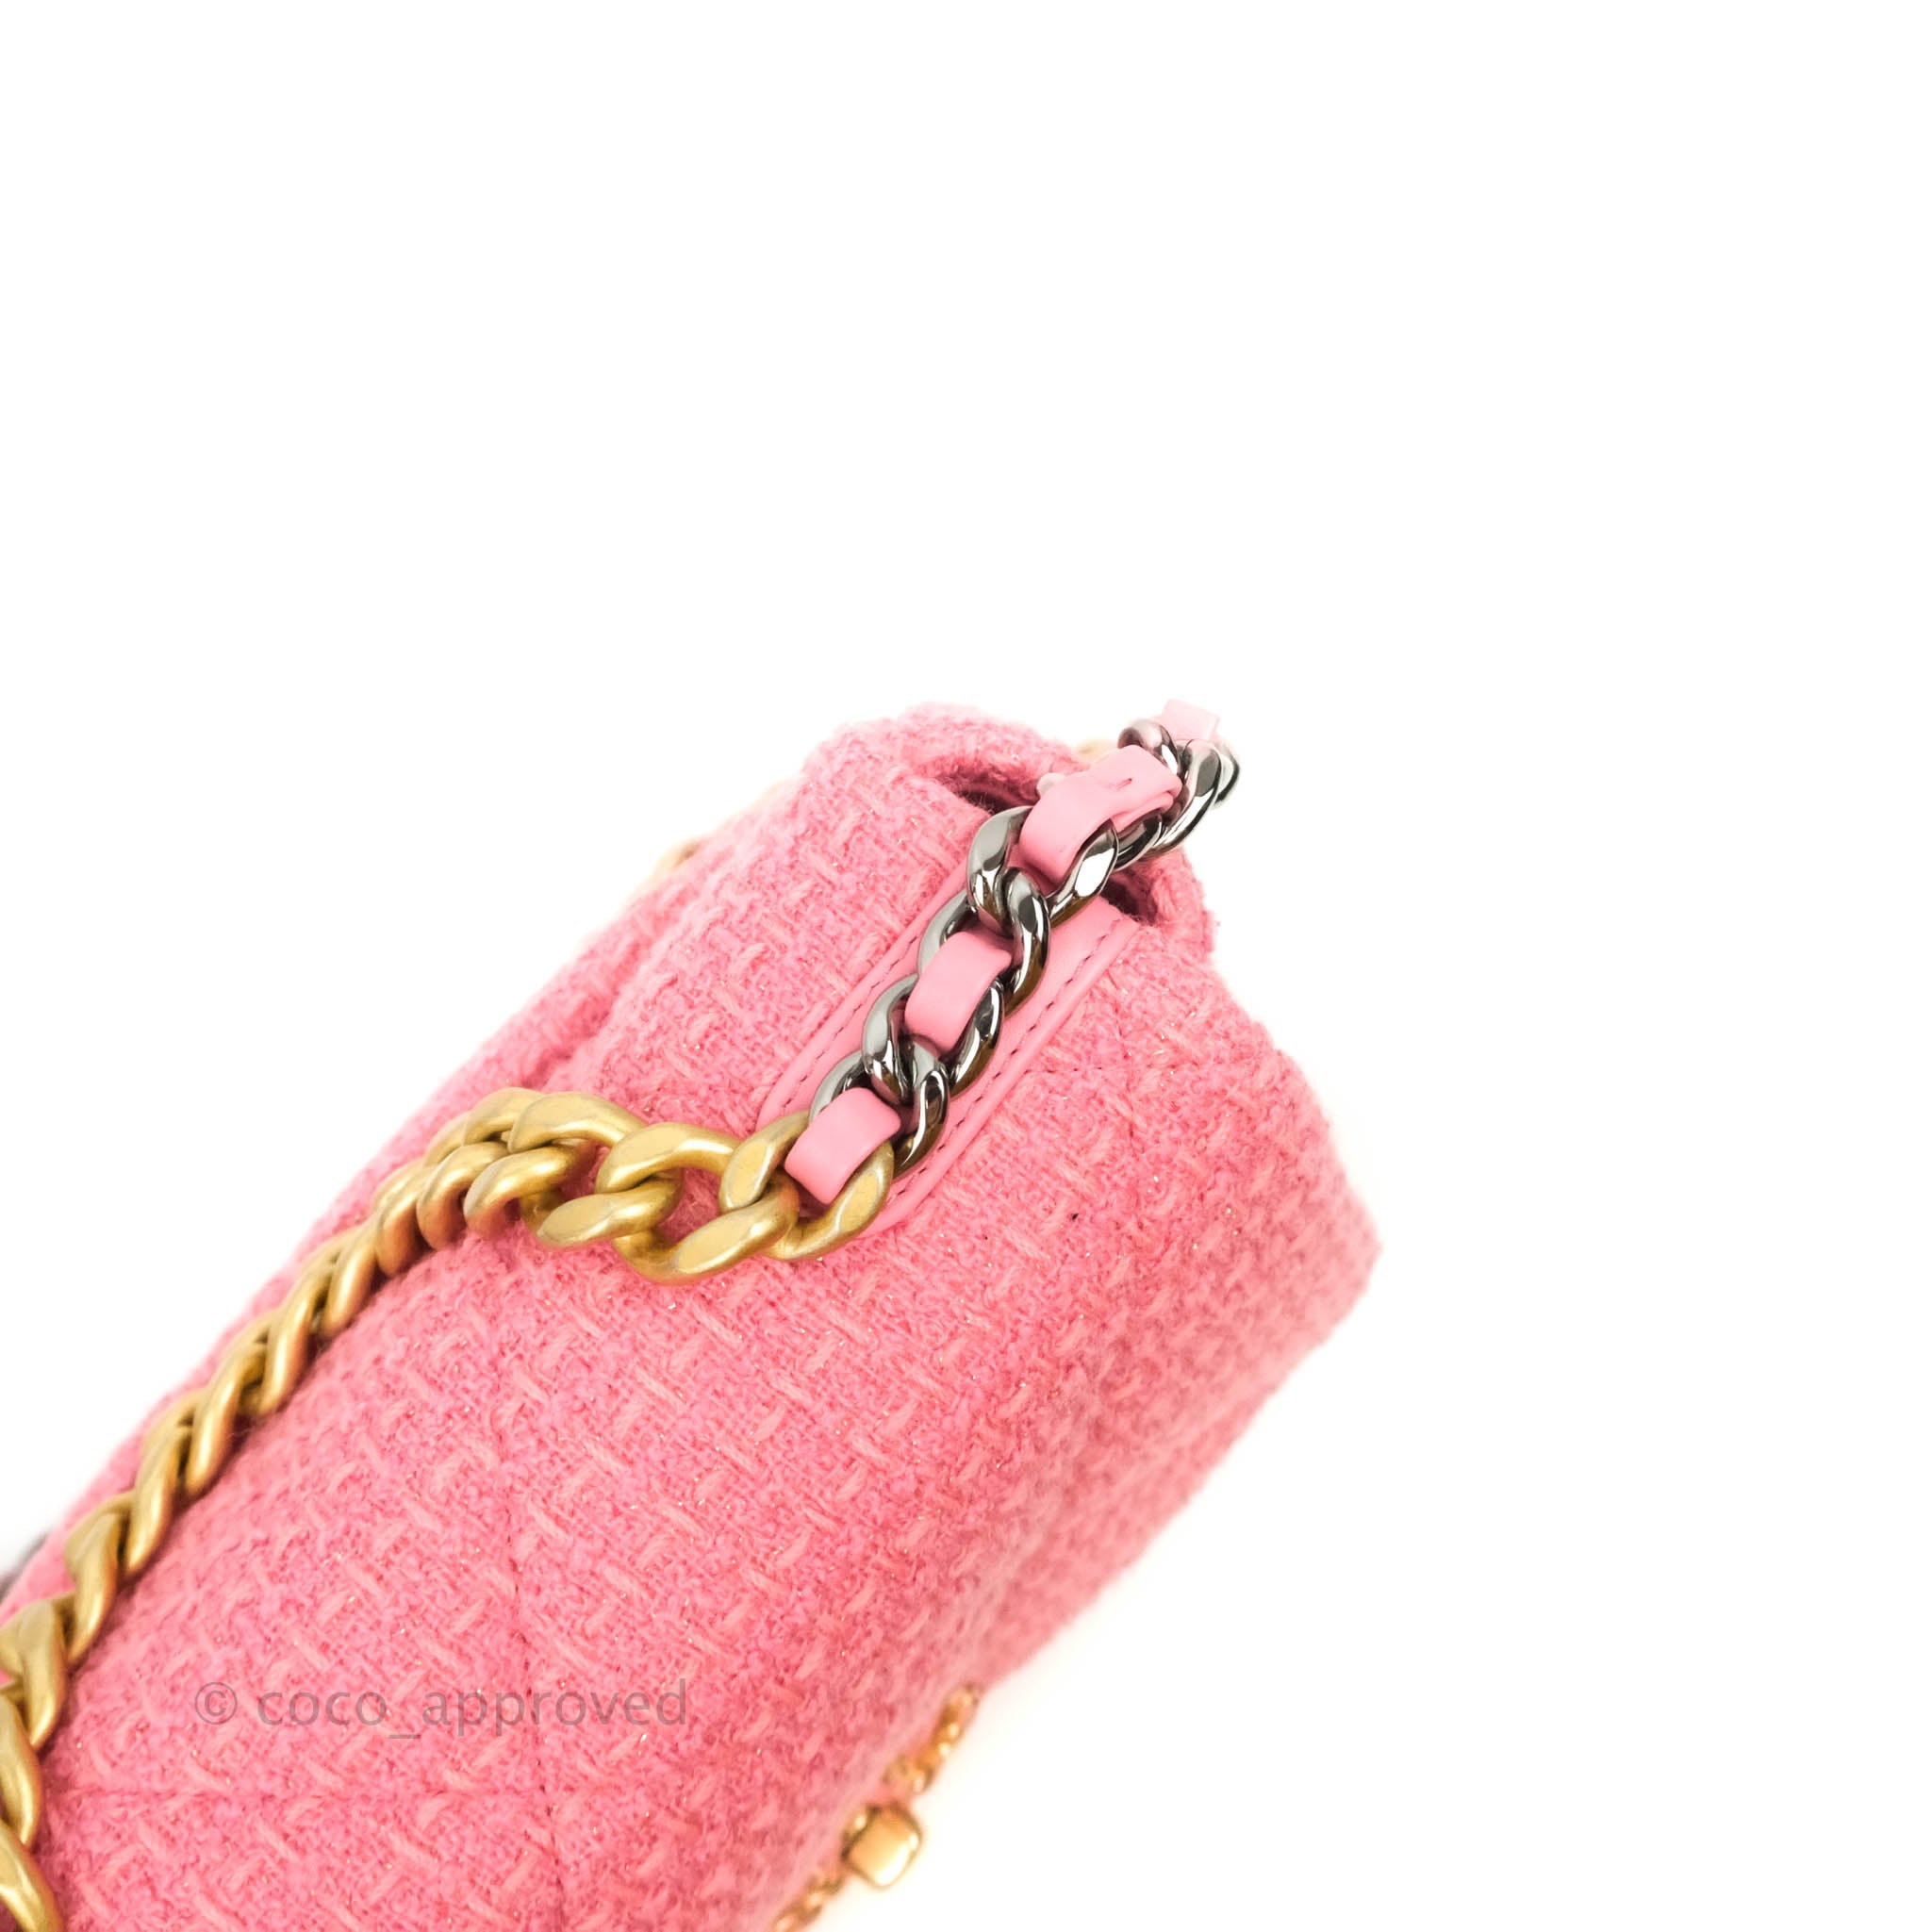 Chanel 19 tweed handbag Chanel Multicolour in Tweed - 29358739